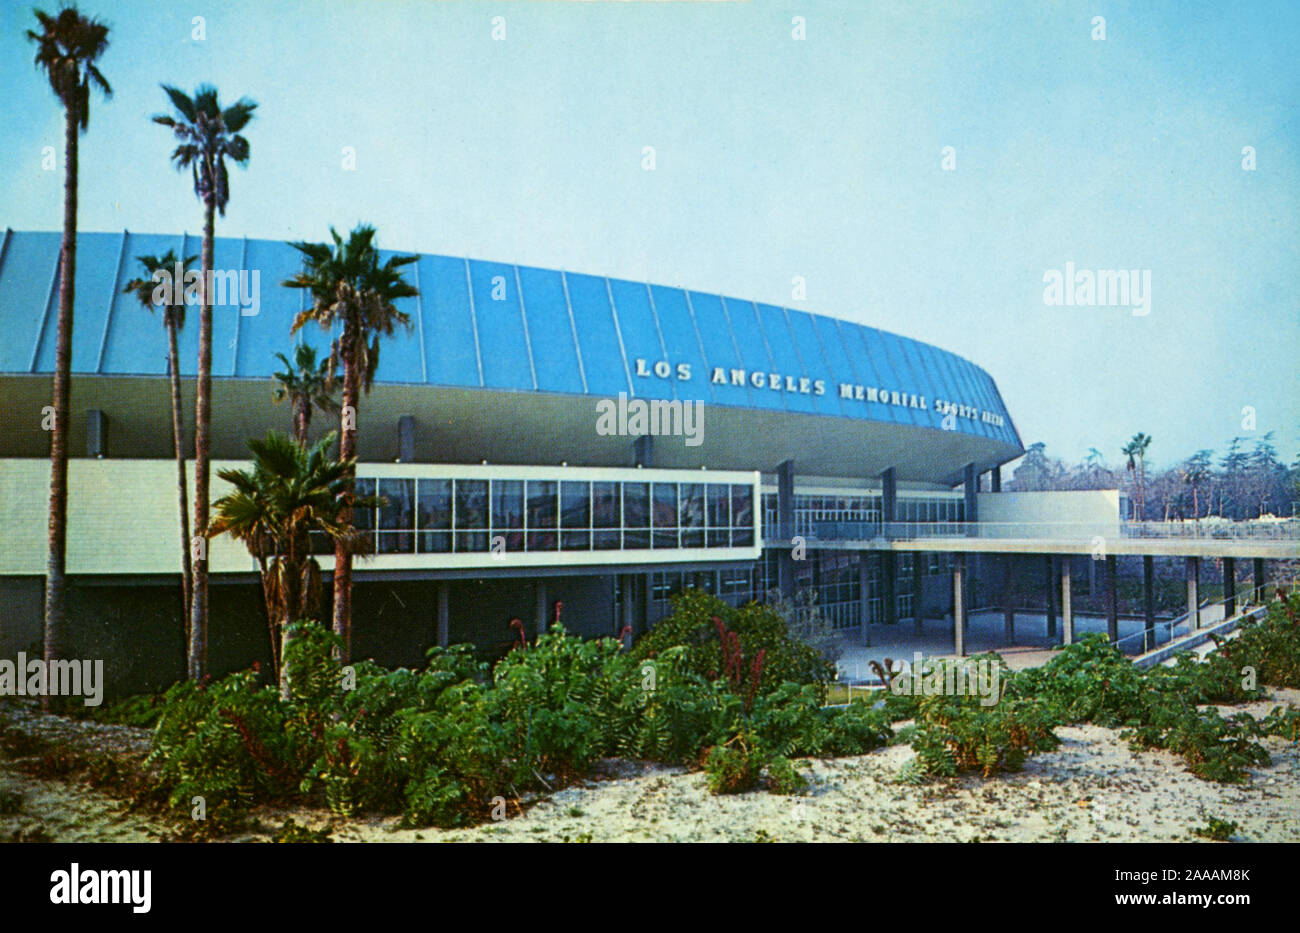 El Los Angeles Memorial Sports Arena fue una vez el hogar de la NBA L.A. Clippers, otros equipos deportivos y muchos conciertos de rock clásico incluyendo perfromances memorable por Pink Floyd y Bruce Springsteen. El edificio ya no está. Foto de stock